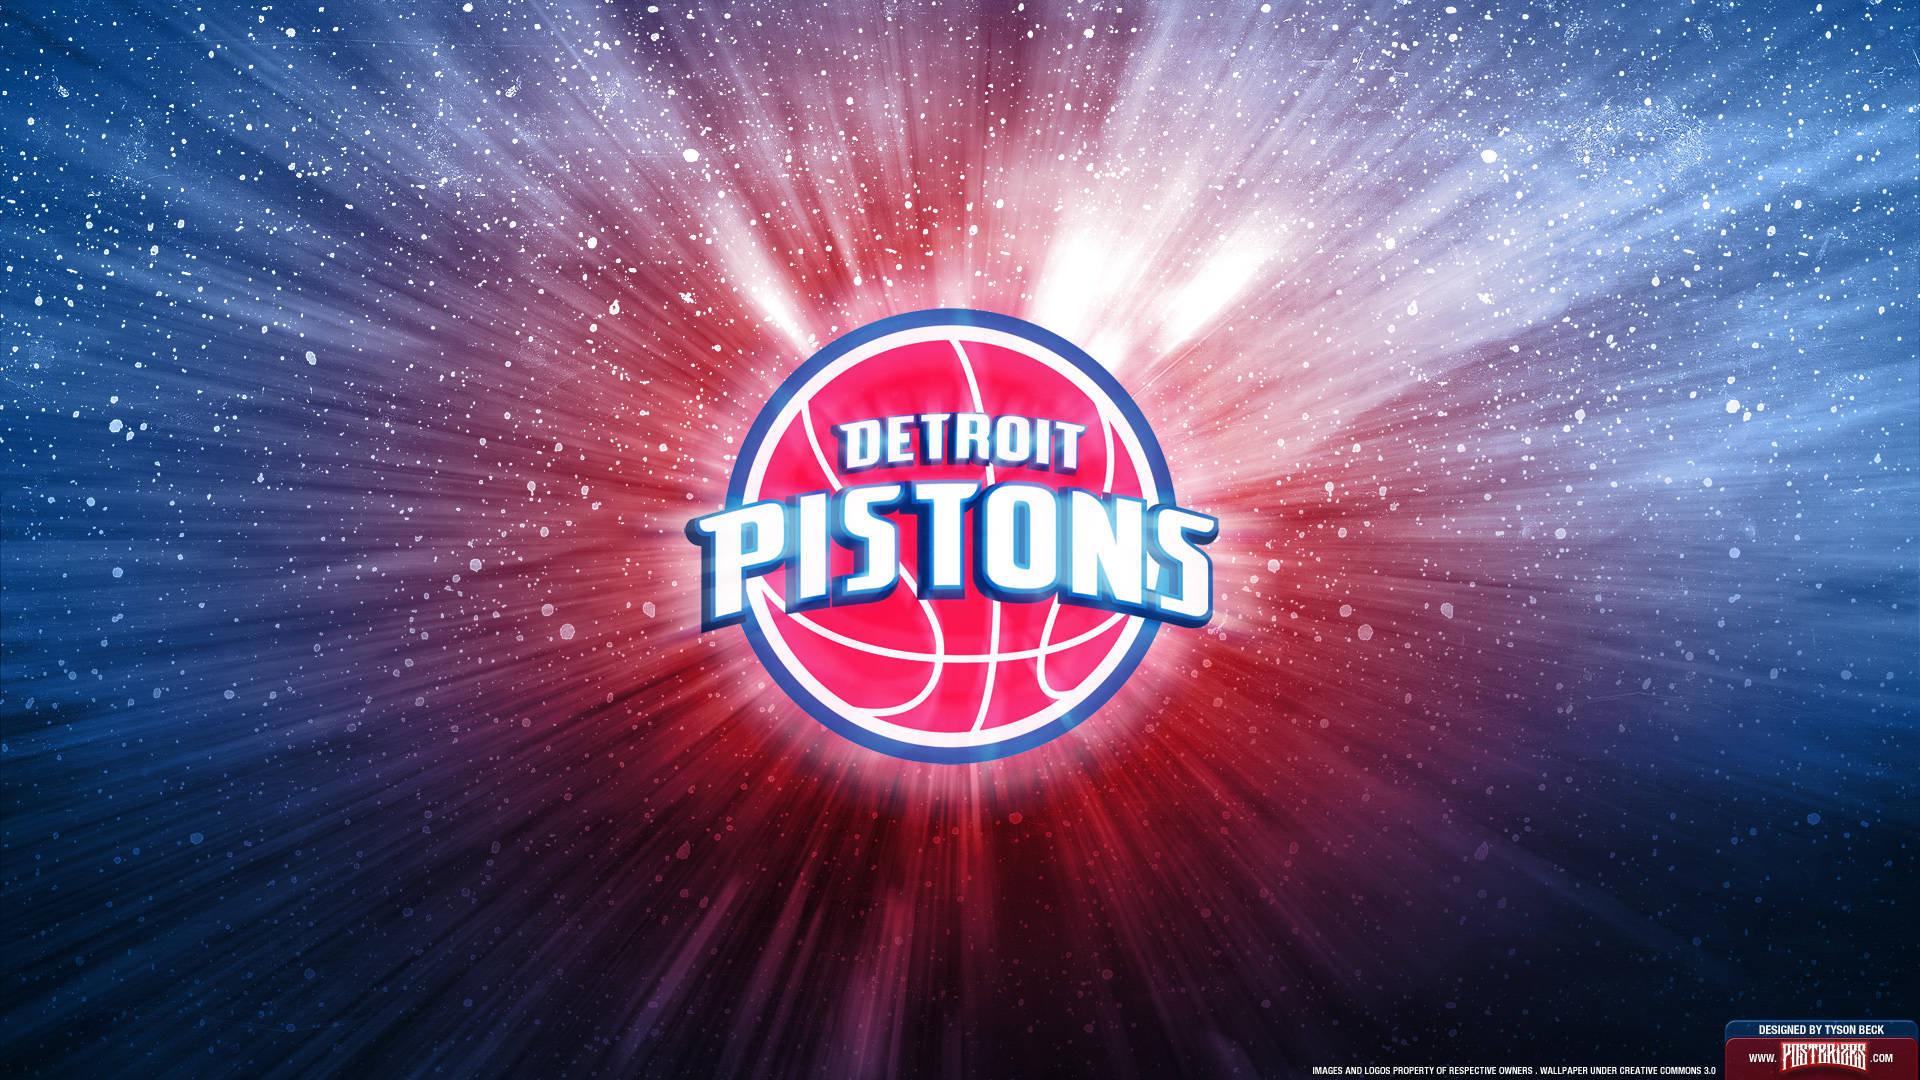 Detroit Pistons Basketball Team